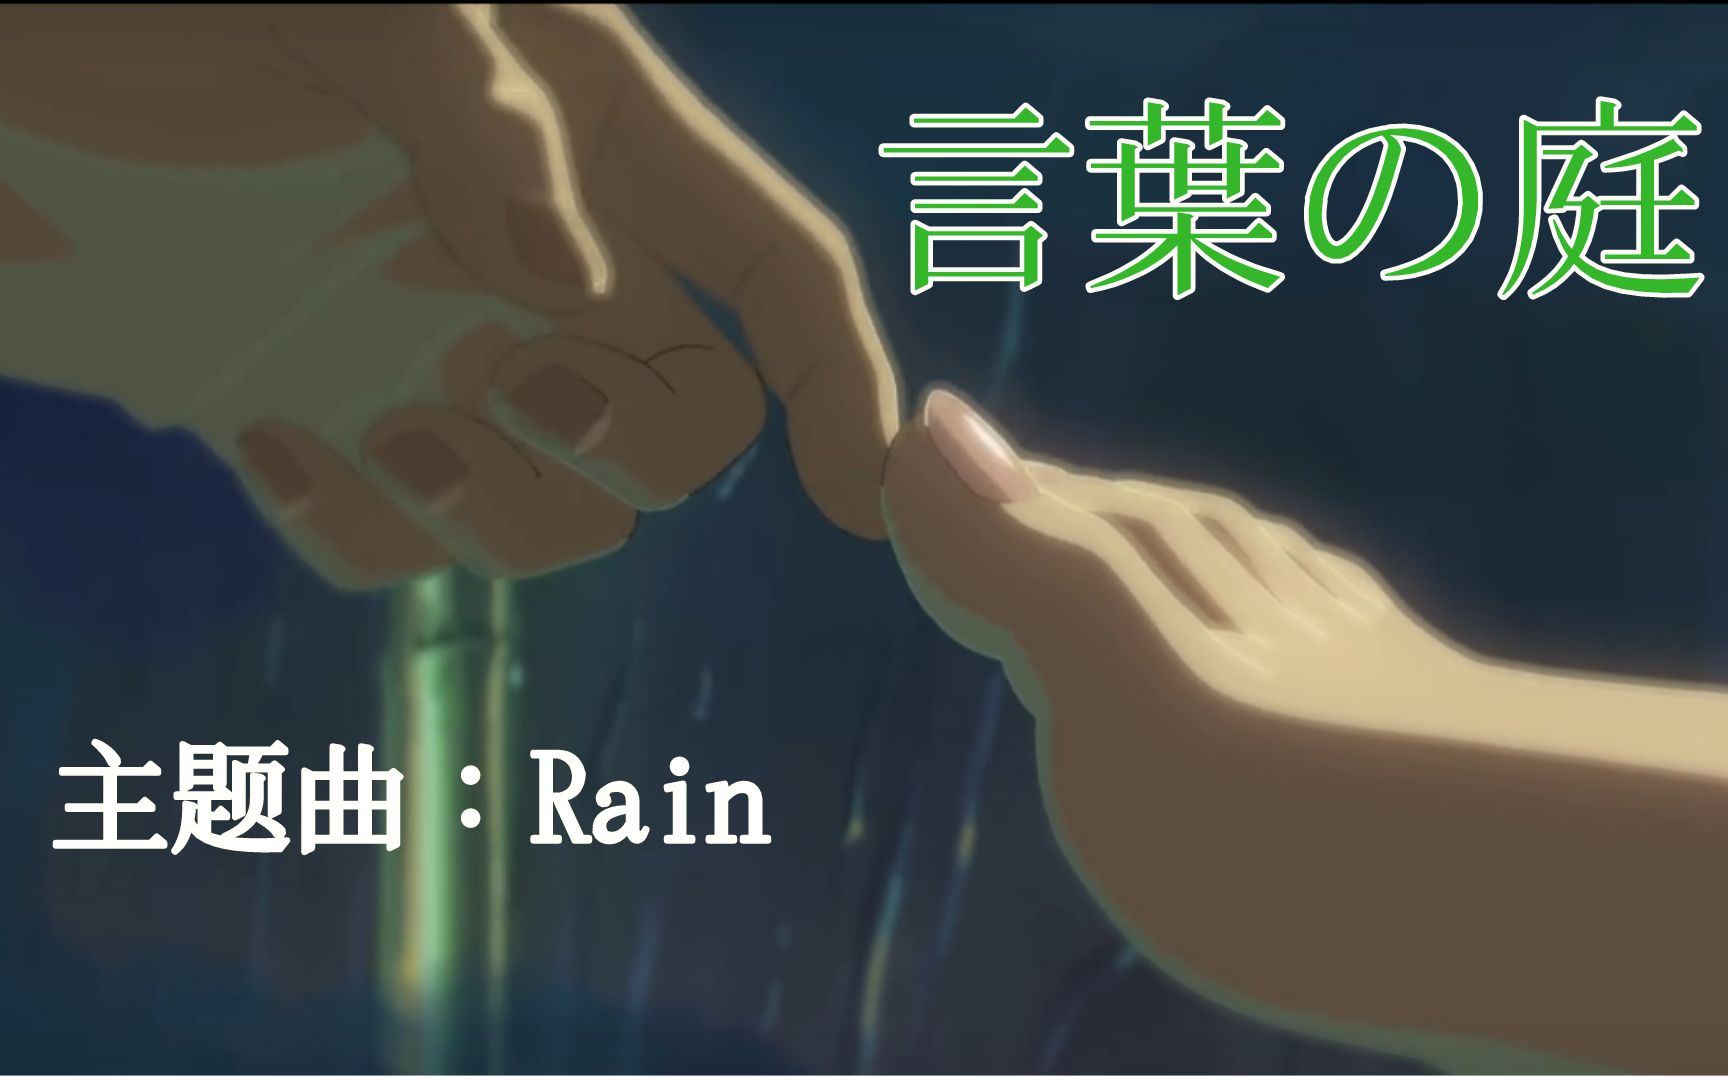 日语歌曲教学 窗外的雨 是否可以表达我对你的思念 言叶之庭 主题曲教学 哔哩哔哩 つロ干杯 Bilibili